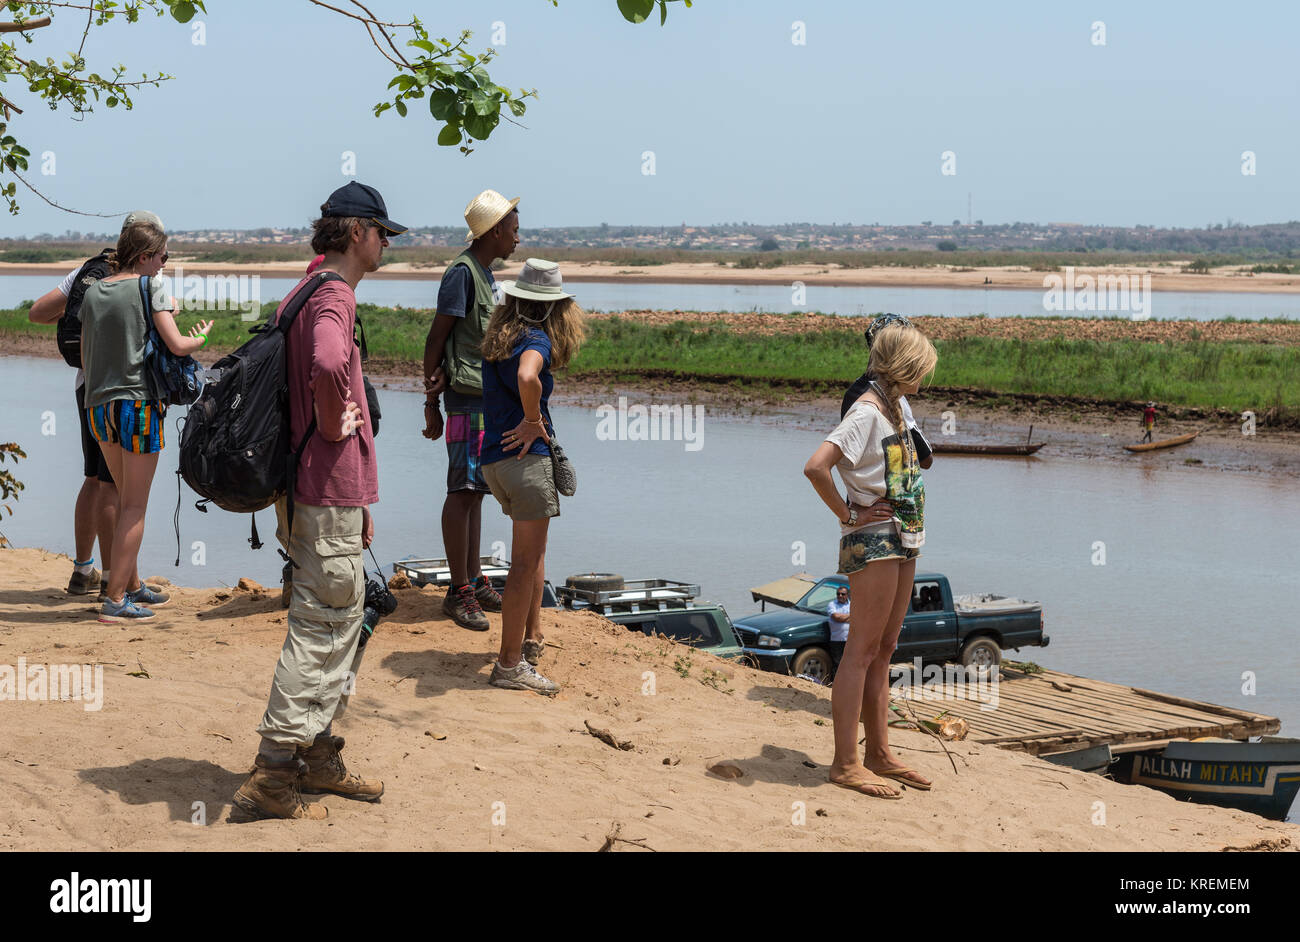 Passagiere und westlichen Touristen warten auf die Fähre Mania Fluss zu überqueren. Madagaskar, Afrika. Stockfoto